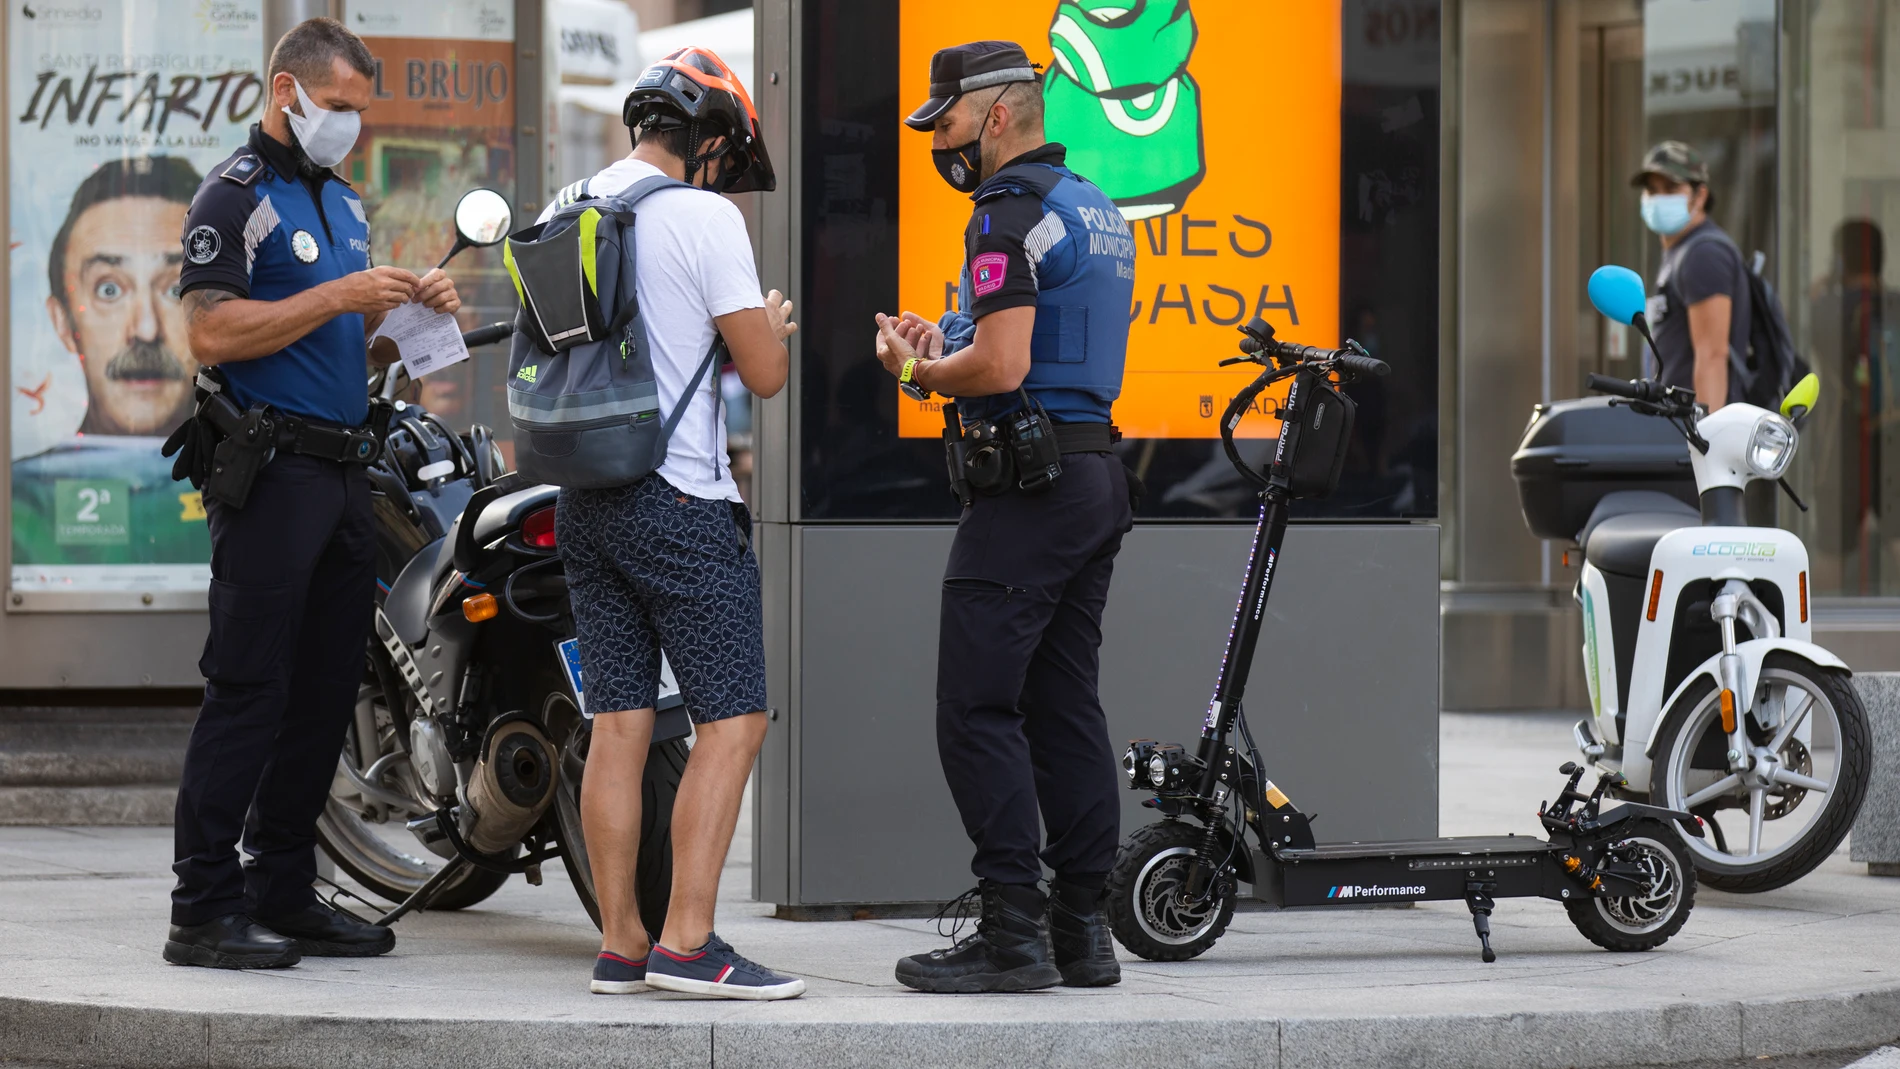 La Policia Municipal requiere la documentación a un joven en las calles de Madrid